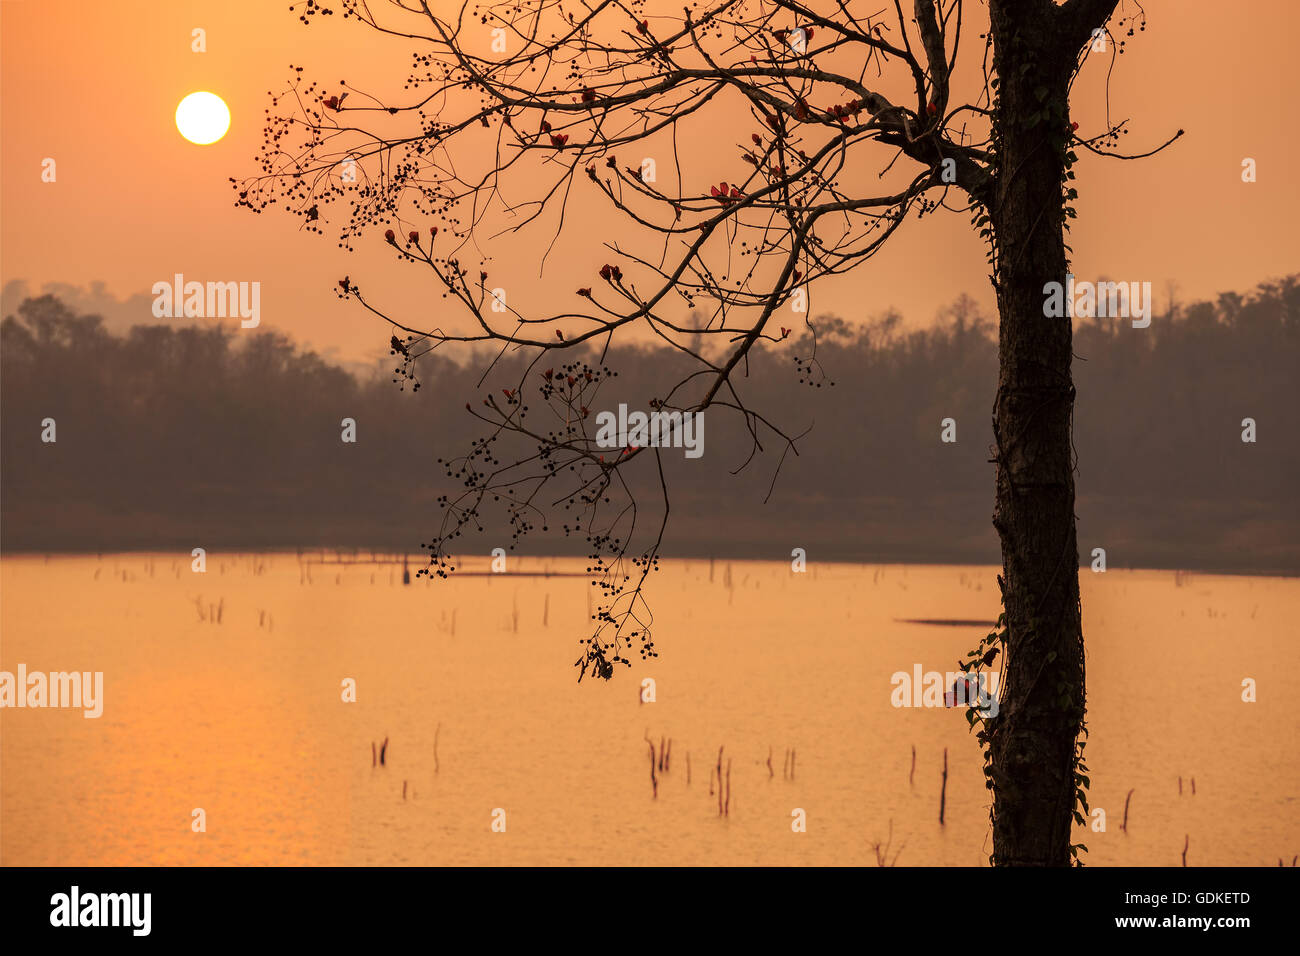 Sonnenuntergang am See mit einem wunderschönen orange Licht. Pompey, Kanchanaburi, Thailand. Stockfoto